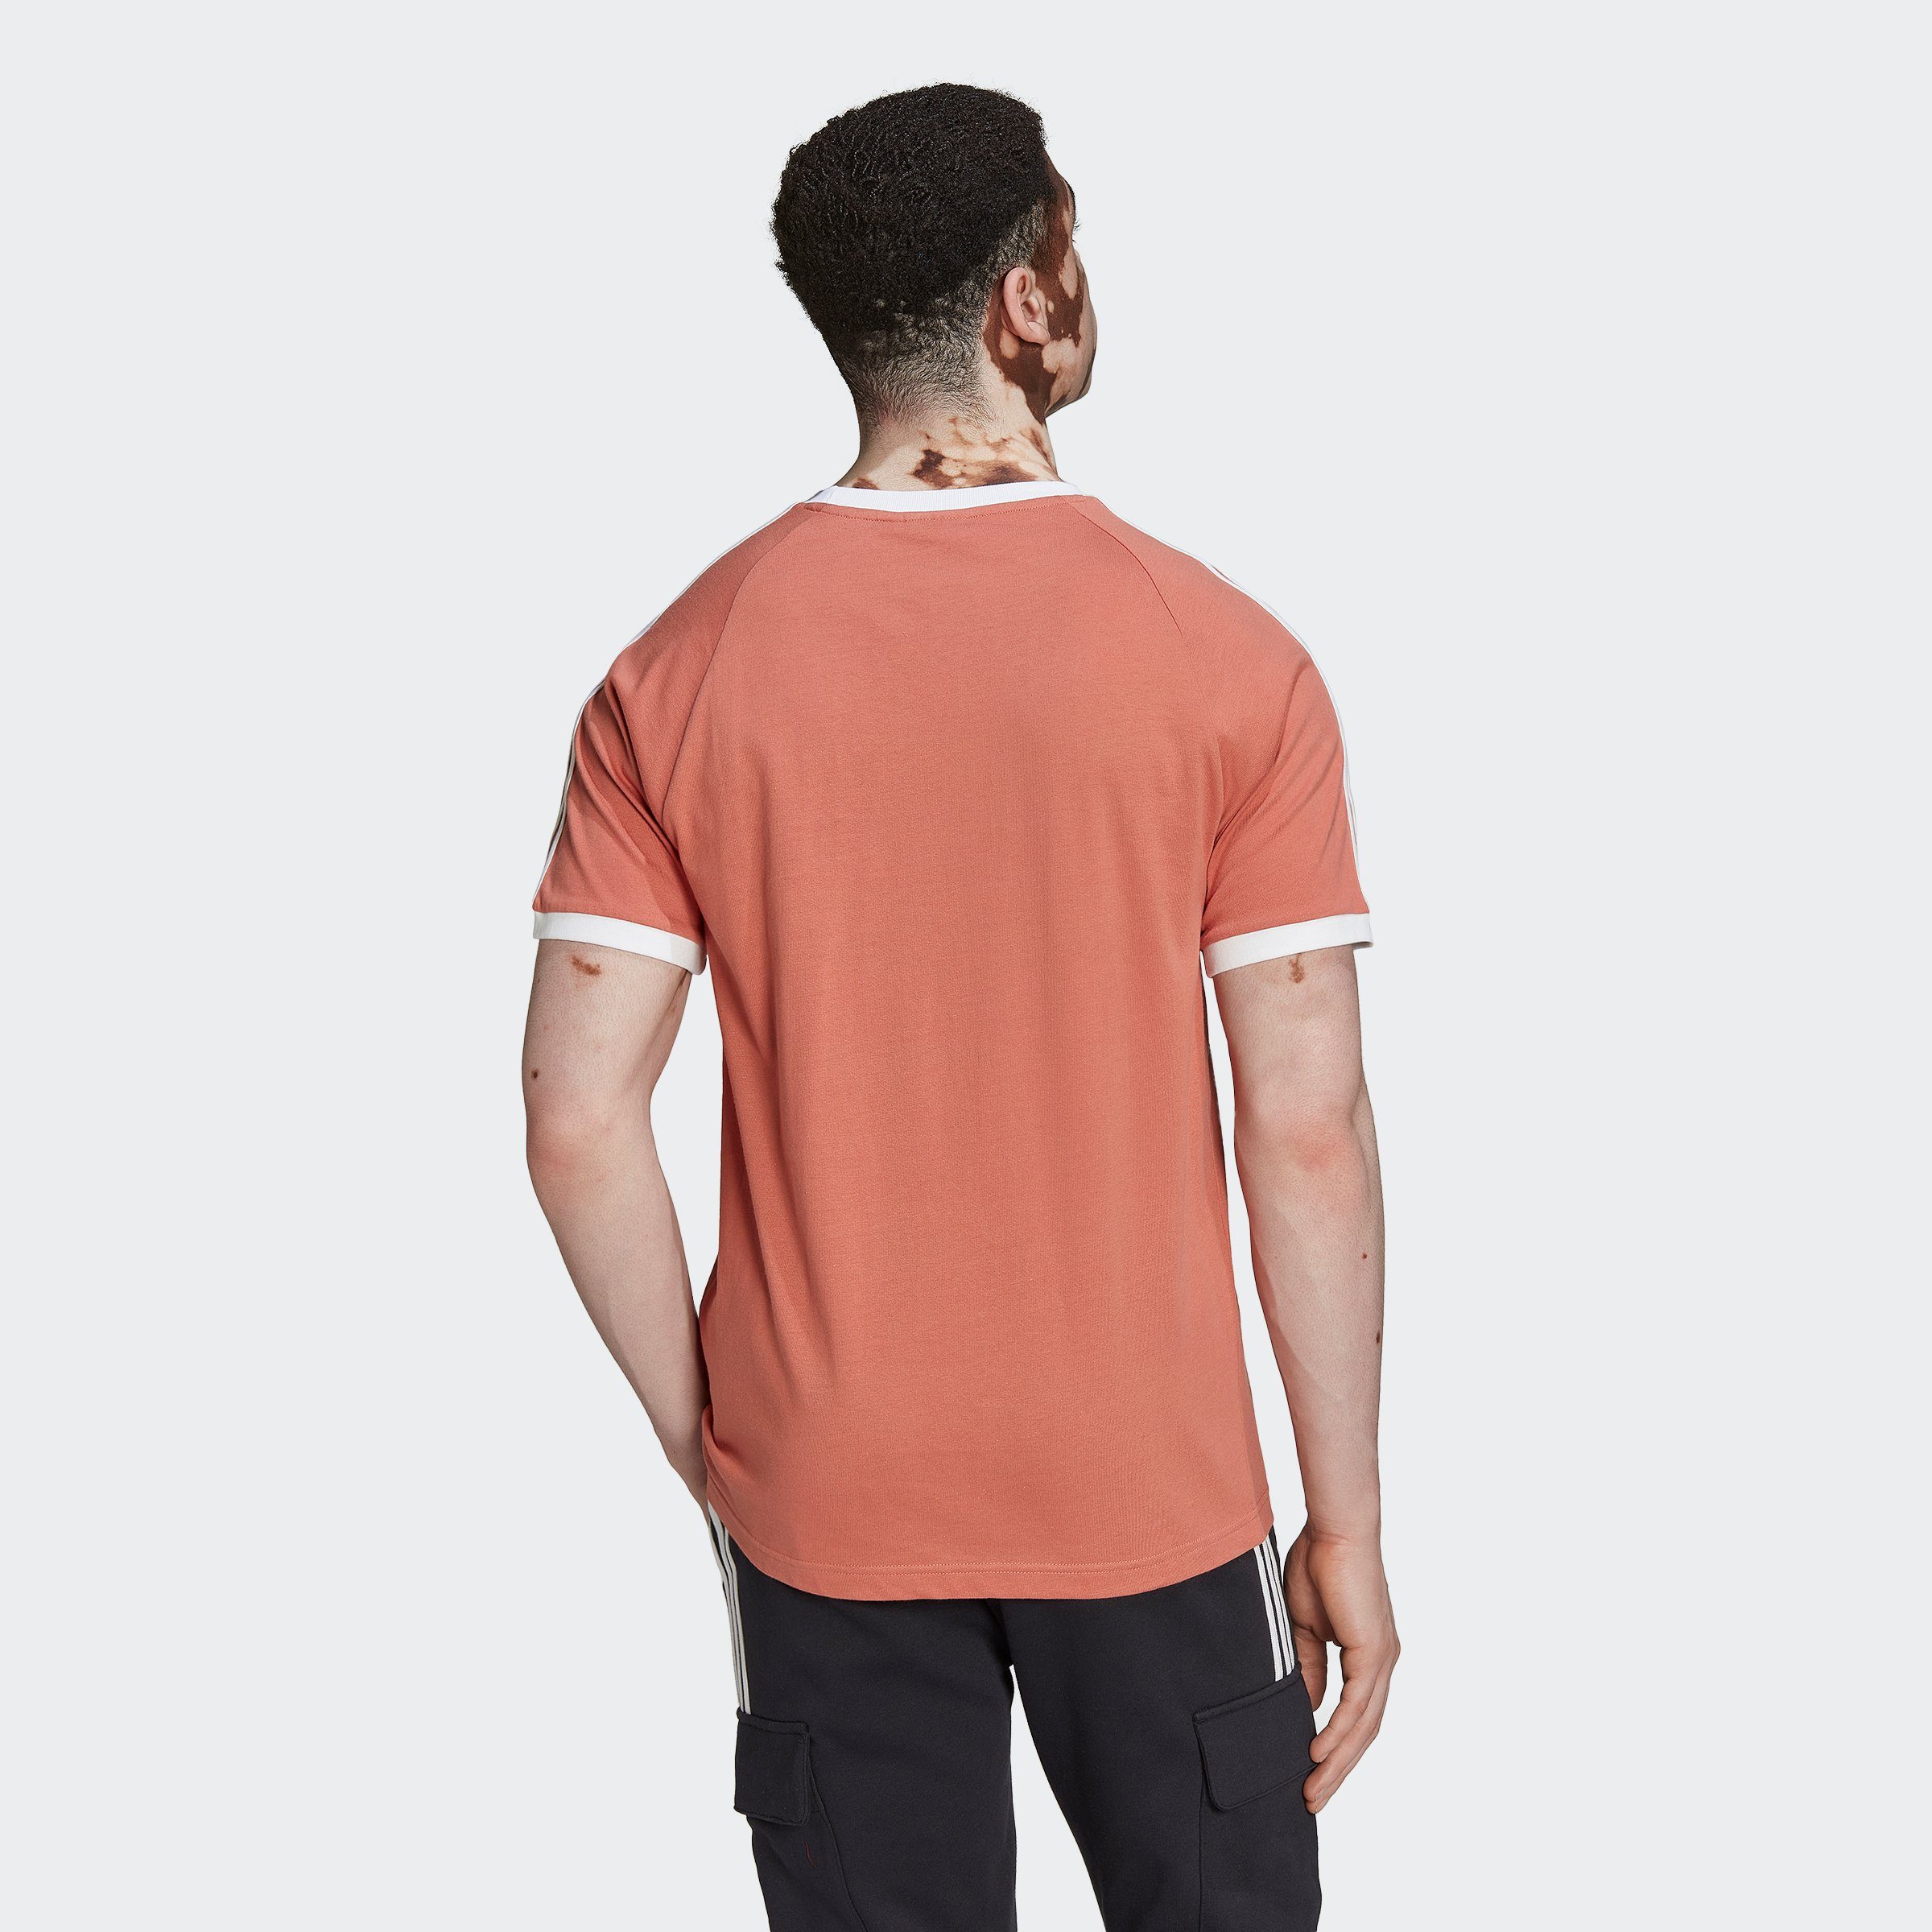 CLASSICS T-Shirt Originals ADICOLOR adidas 3-STREIFEN MAGEAR